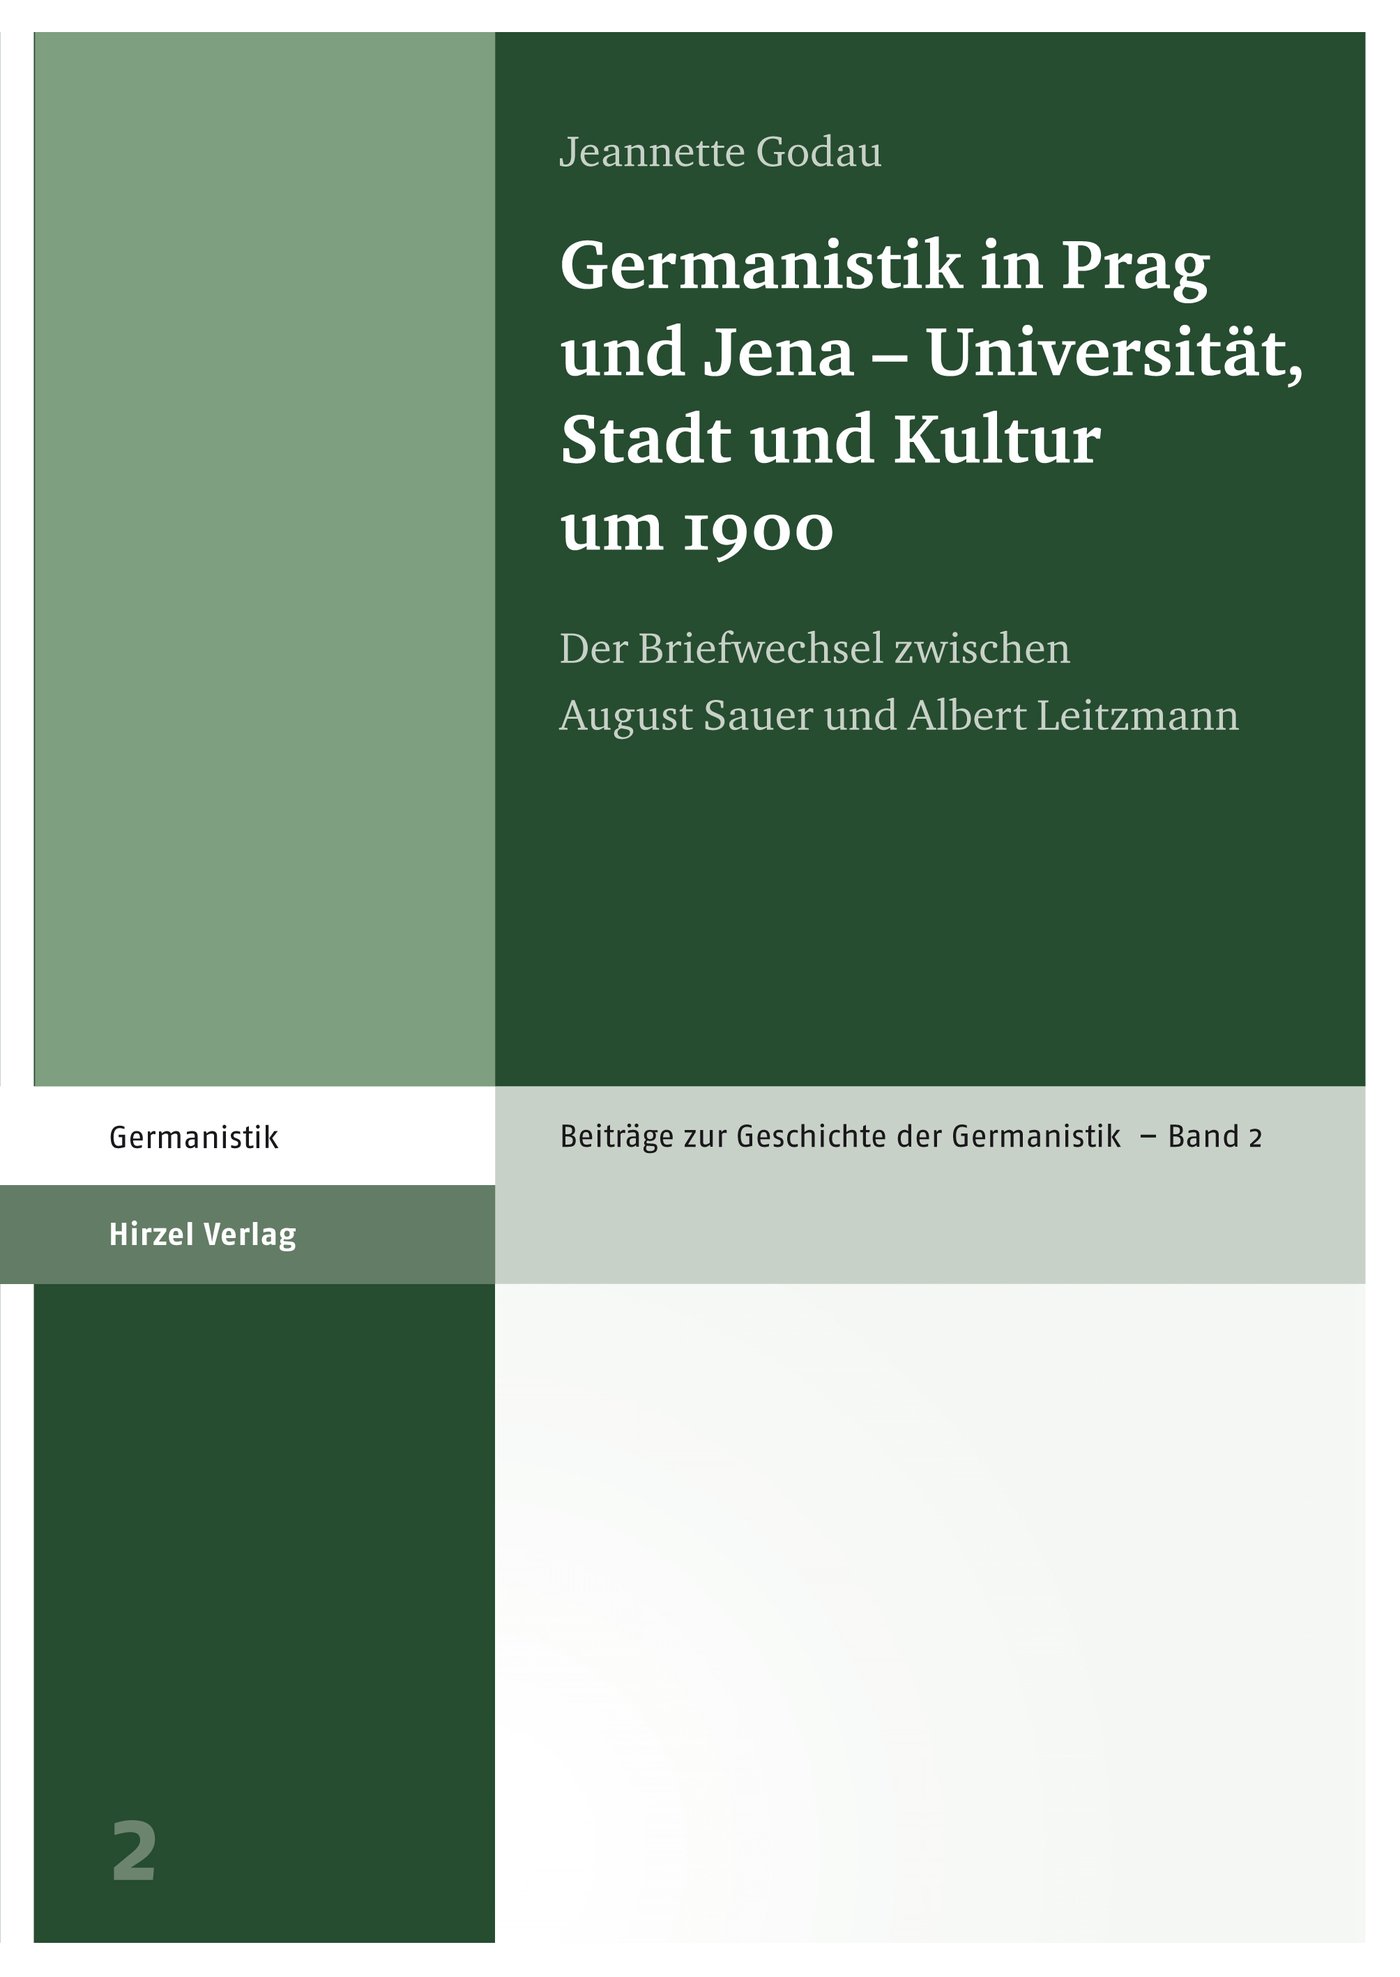 Germanistik in Prag und Jena – Universität, Stadt und Kultur um 1900